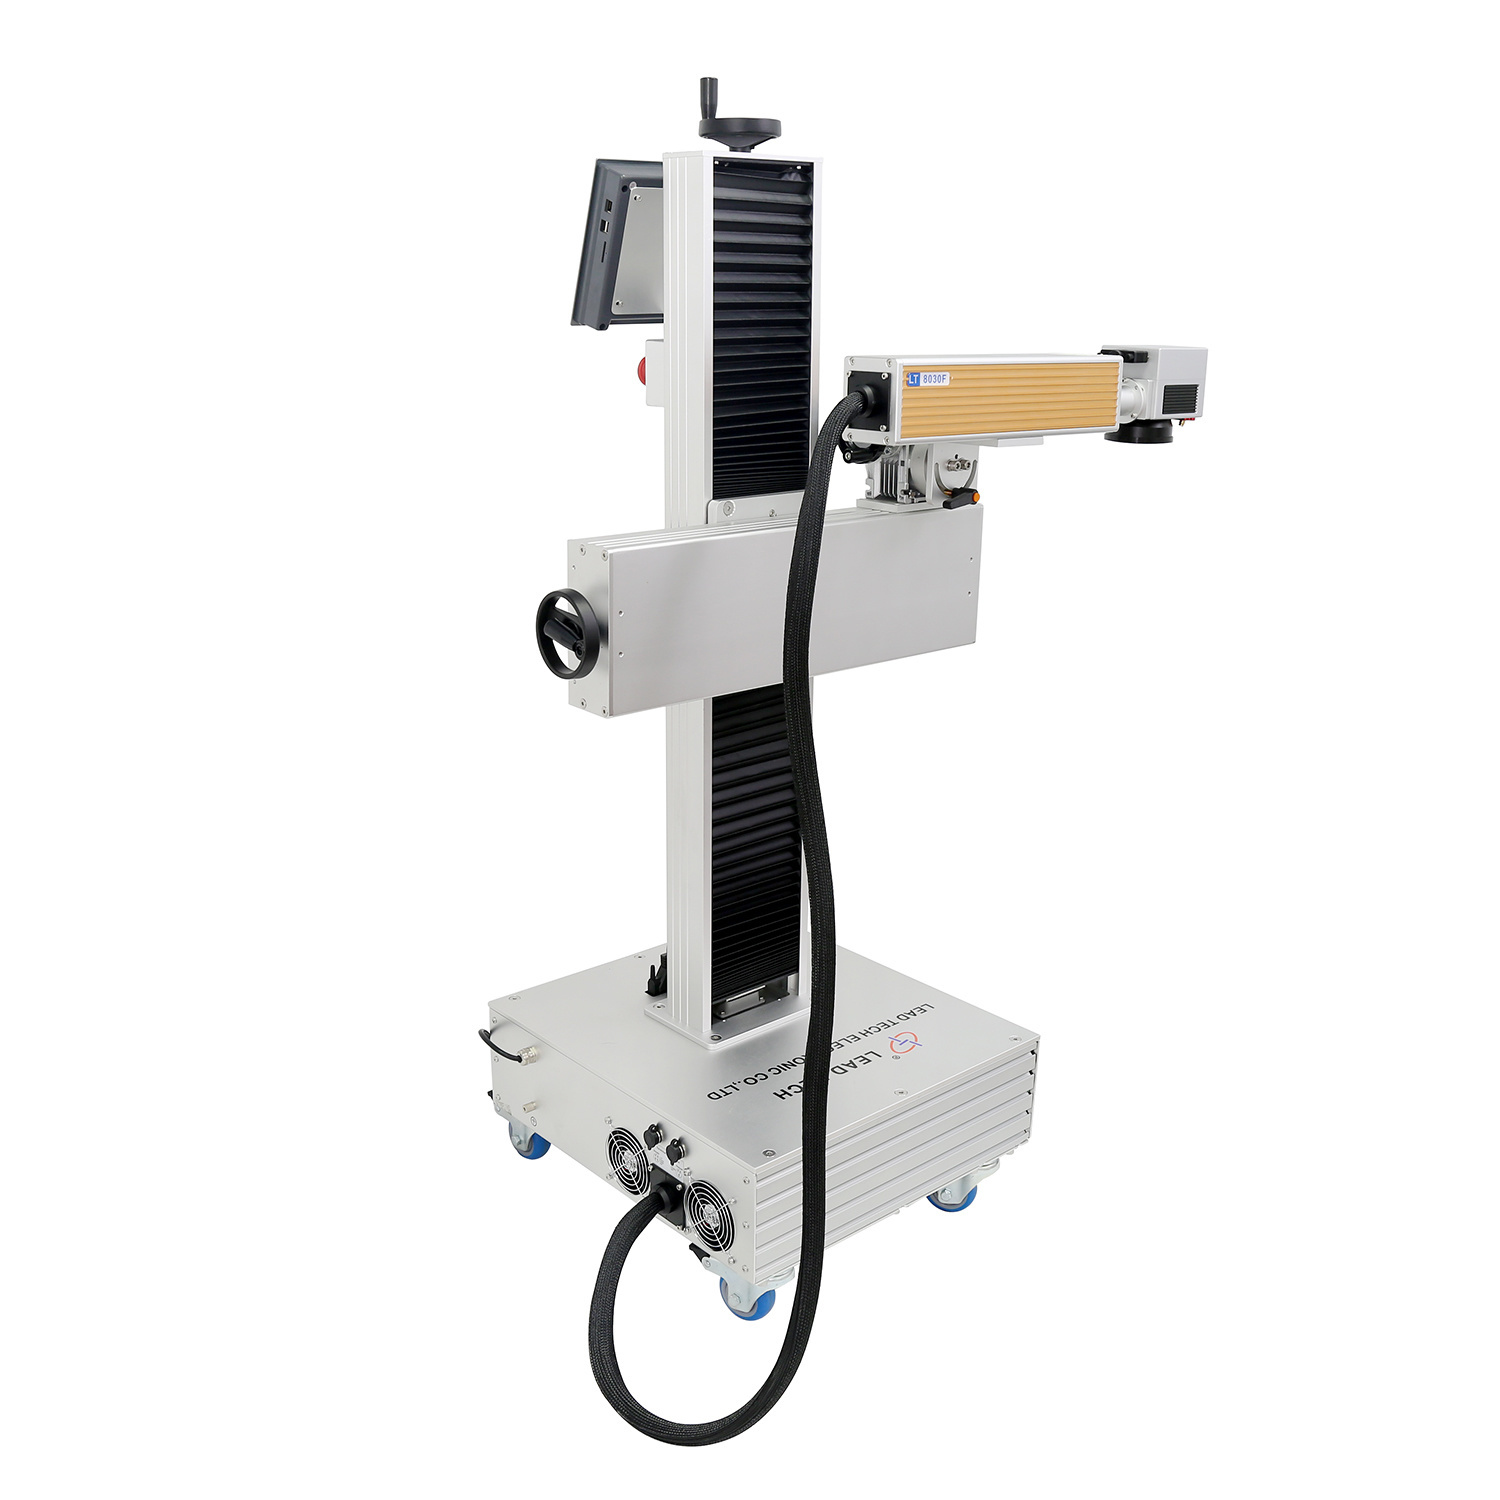 Lt8020f/Lt8030f/Lt8050f 30W Fiber Laser Engraver Printer for Metal or Non-Metal Marking